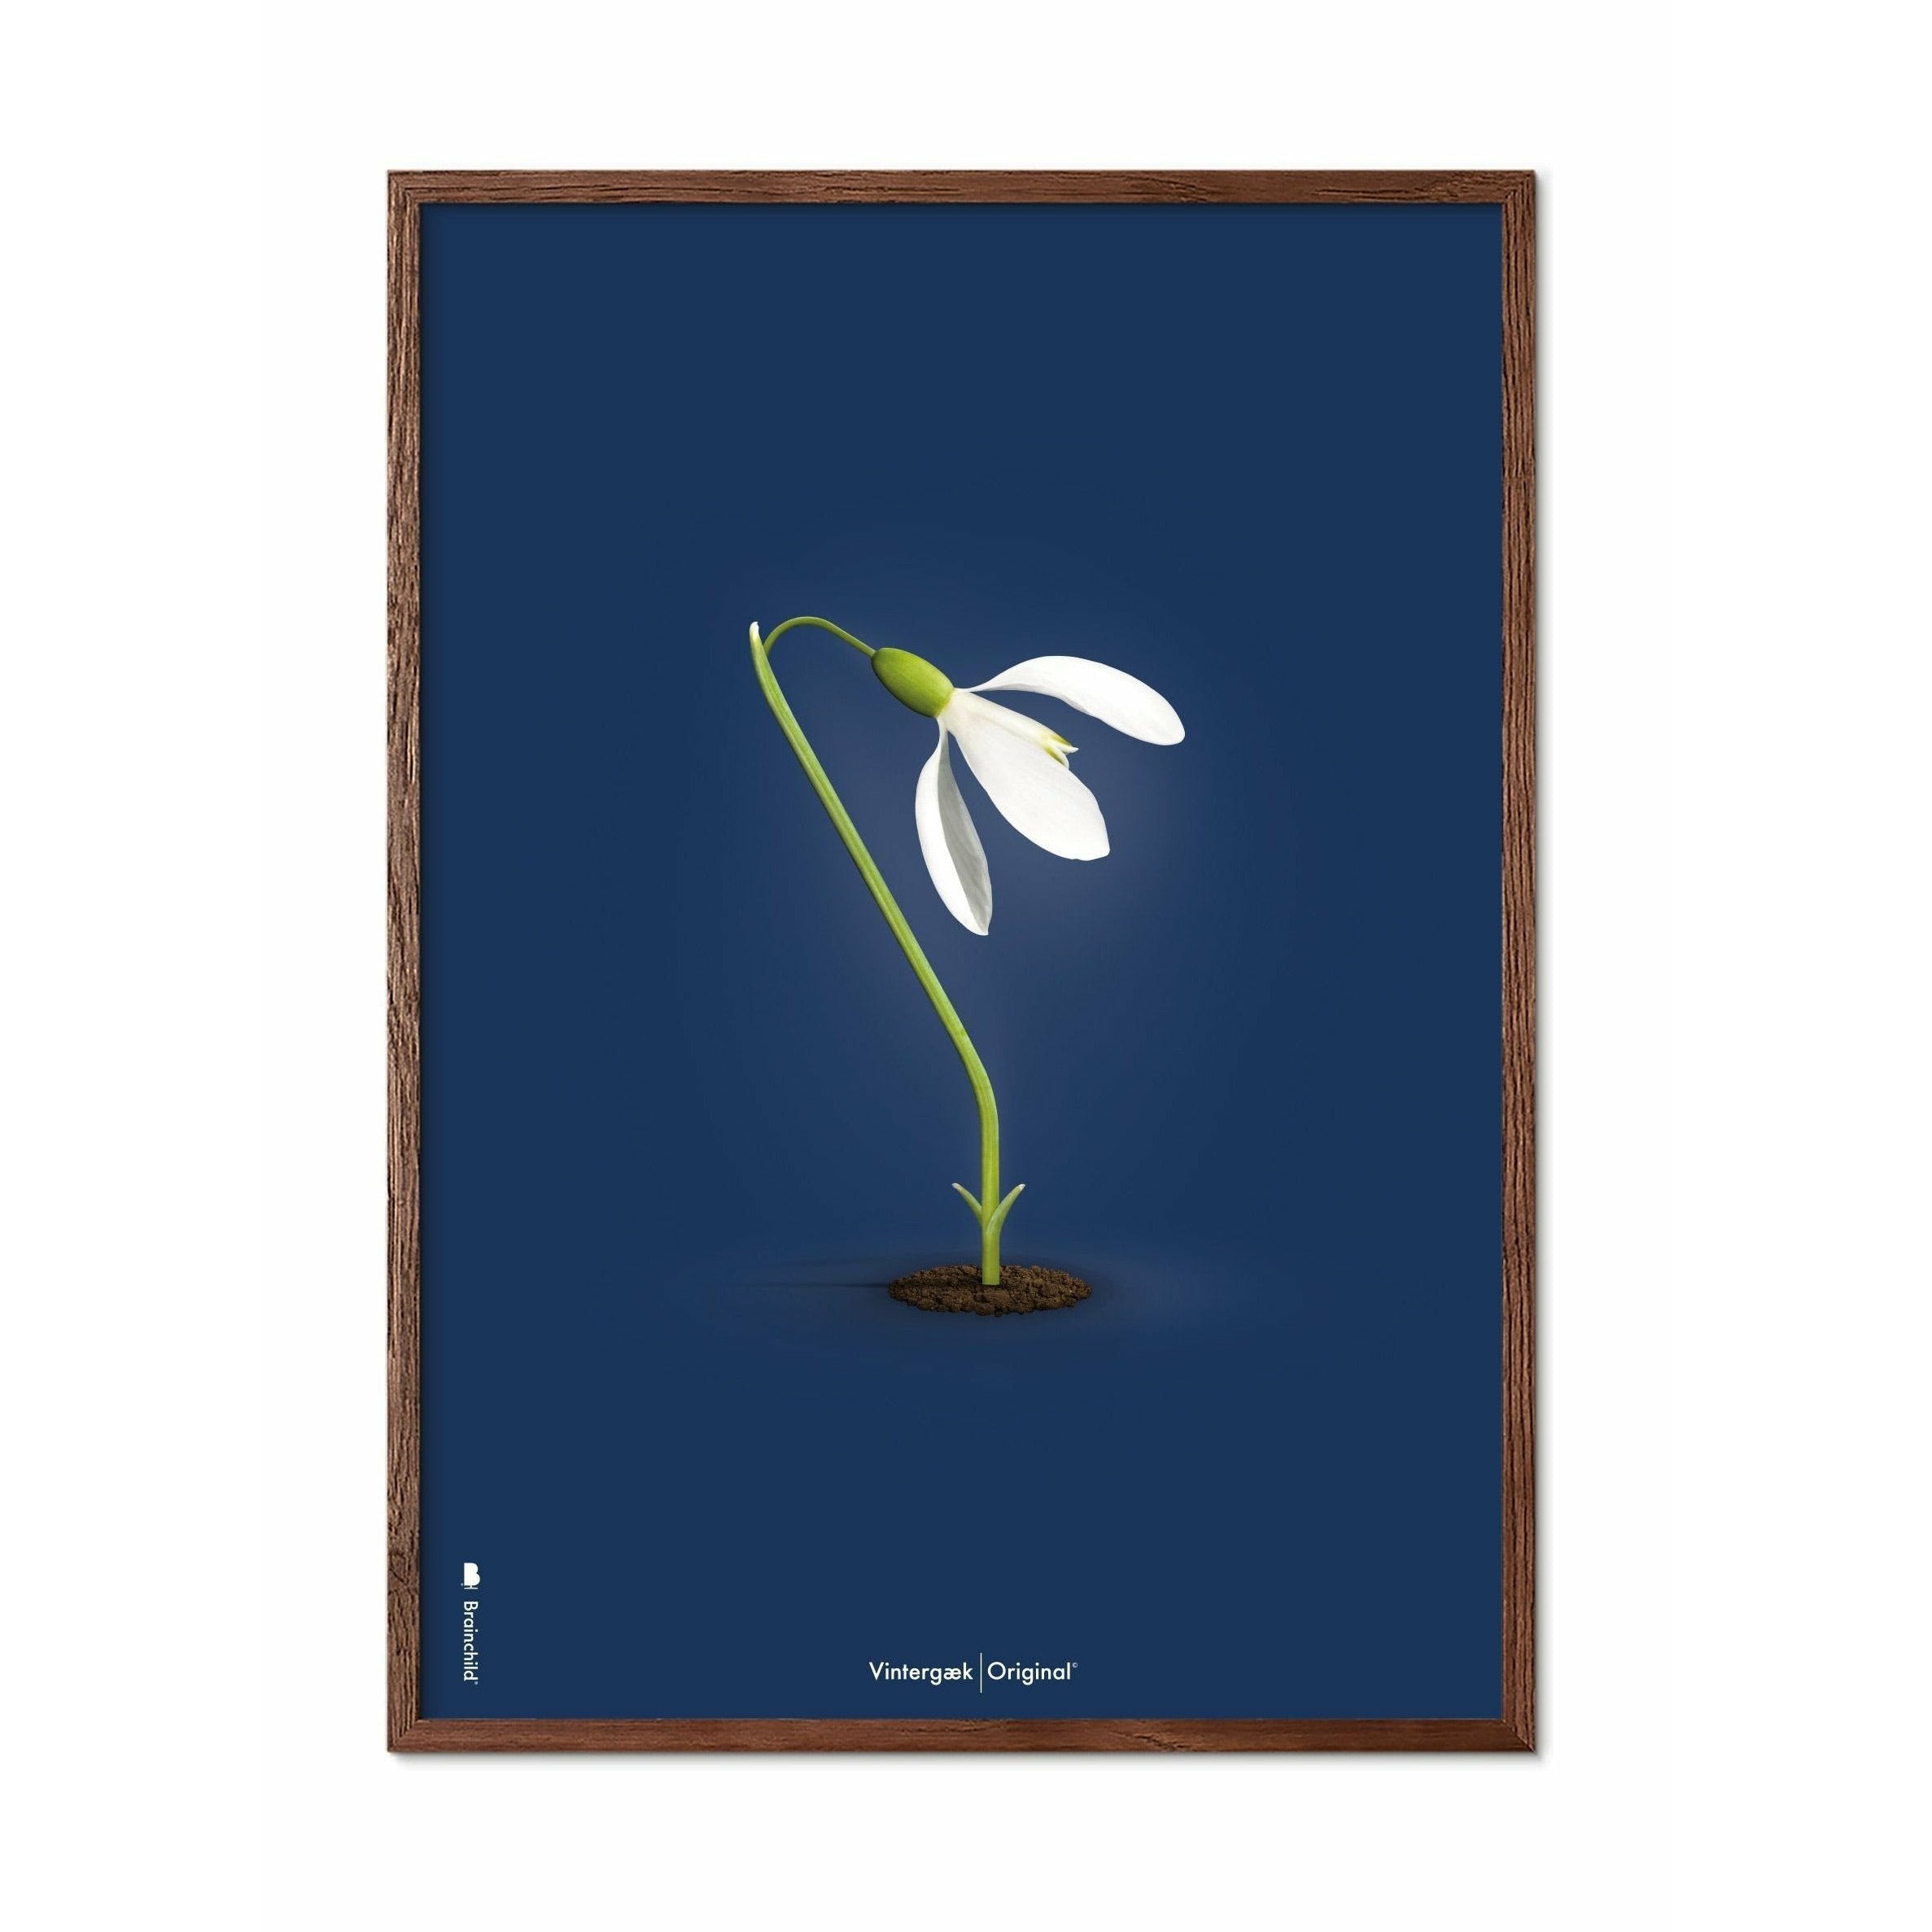 Brainchild Snowdrop Classic Poster, Frame Made Of Dark Wood 70x100 Cm, Dark Blue Background